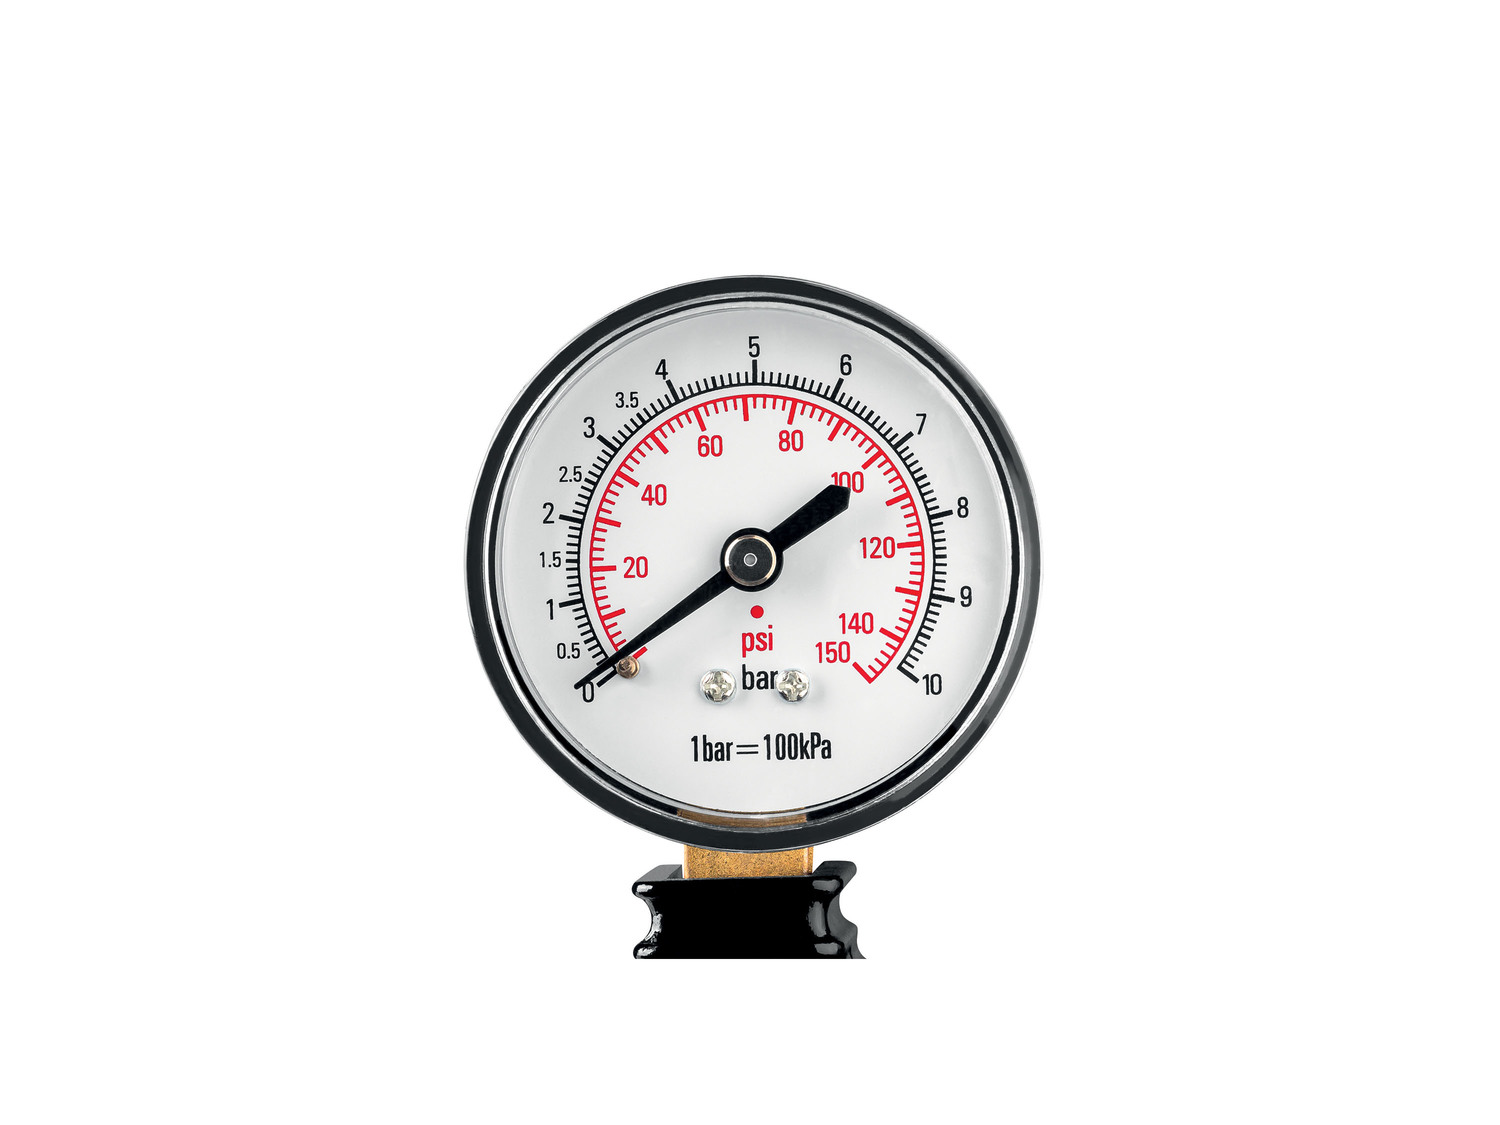 Mini-compresseur Ultimate Speed 12 V , le prix 17.99 € 
- Pression max. 10 bar
- ...